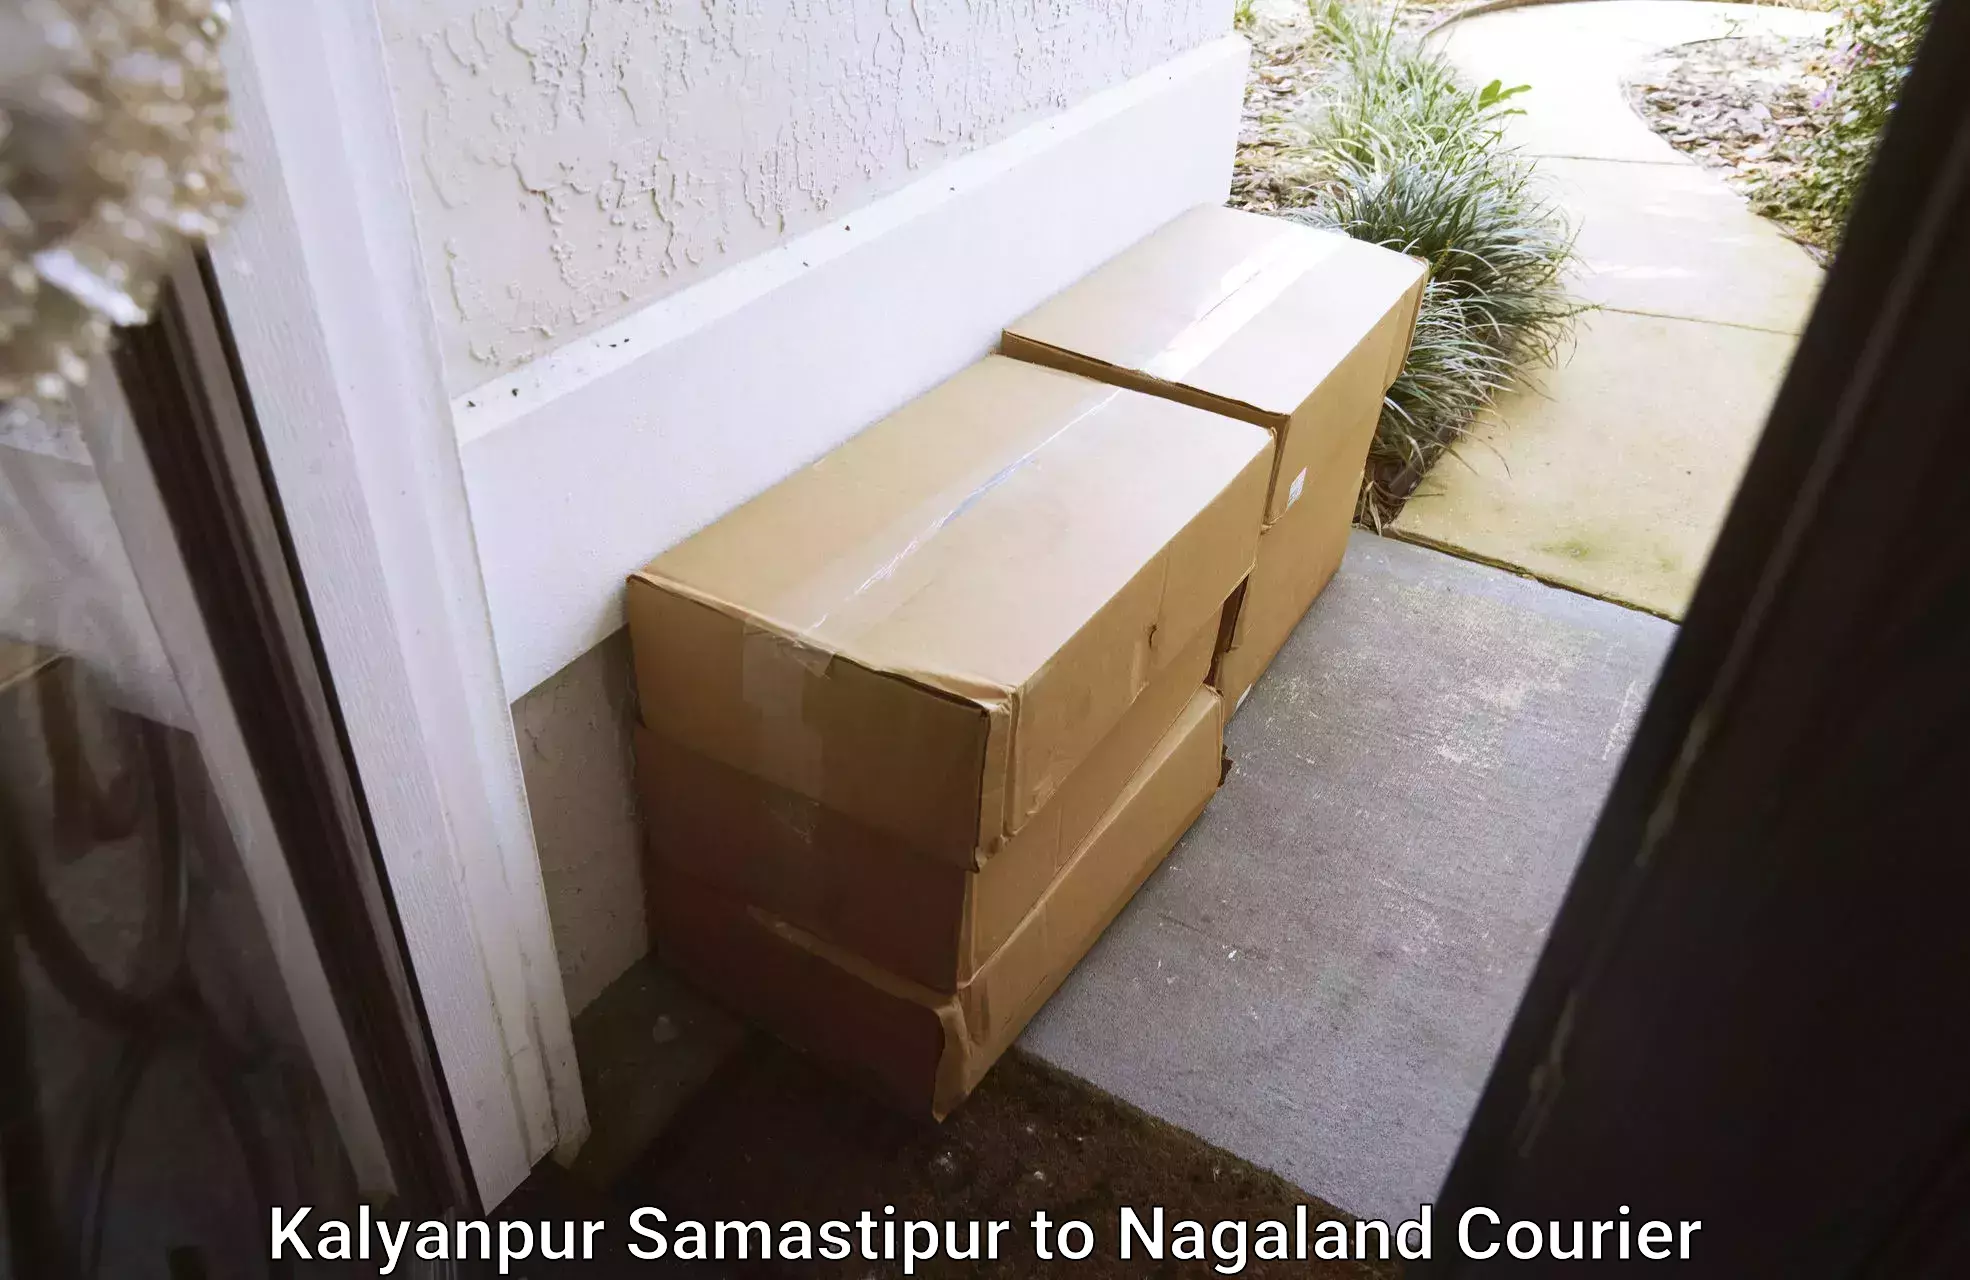 Moving and packing experts Kalyanpur Samastipur to NIT Nagaland